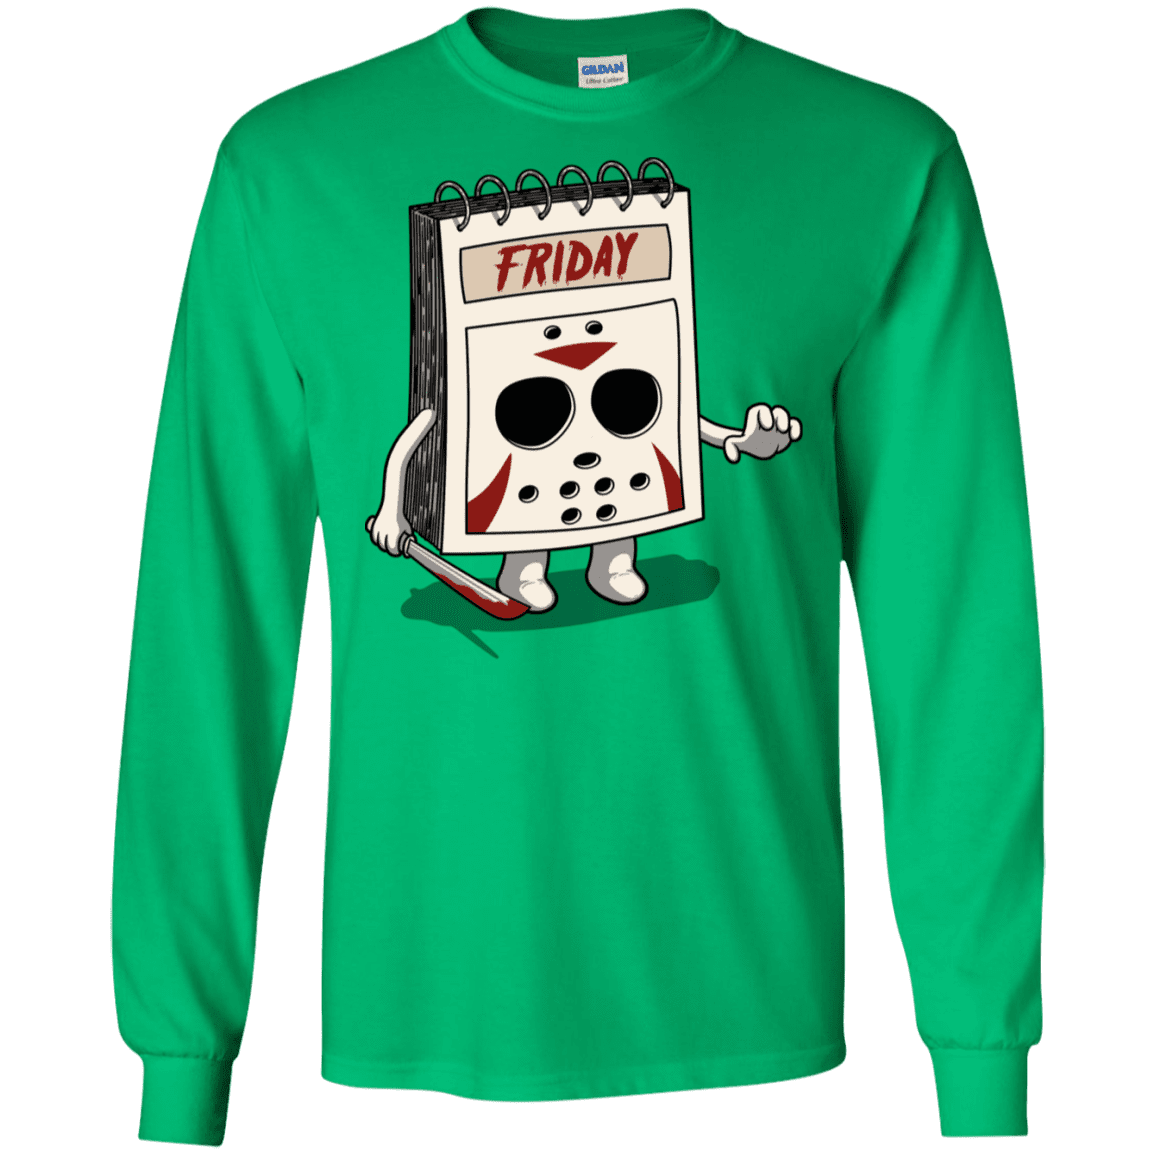 T-Shirts Irish Green / S Manic Friday Men's Long Sleeve T-Shirt